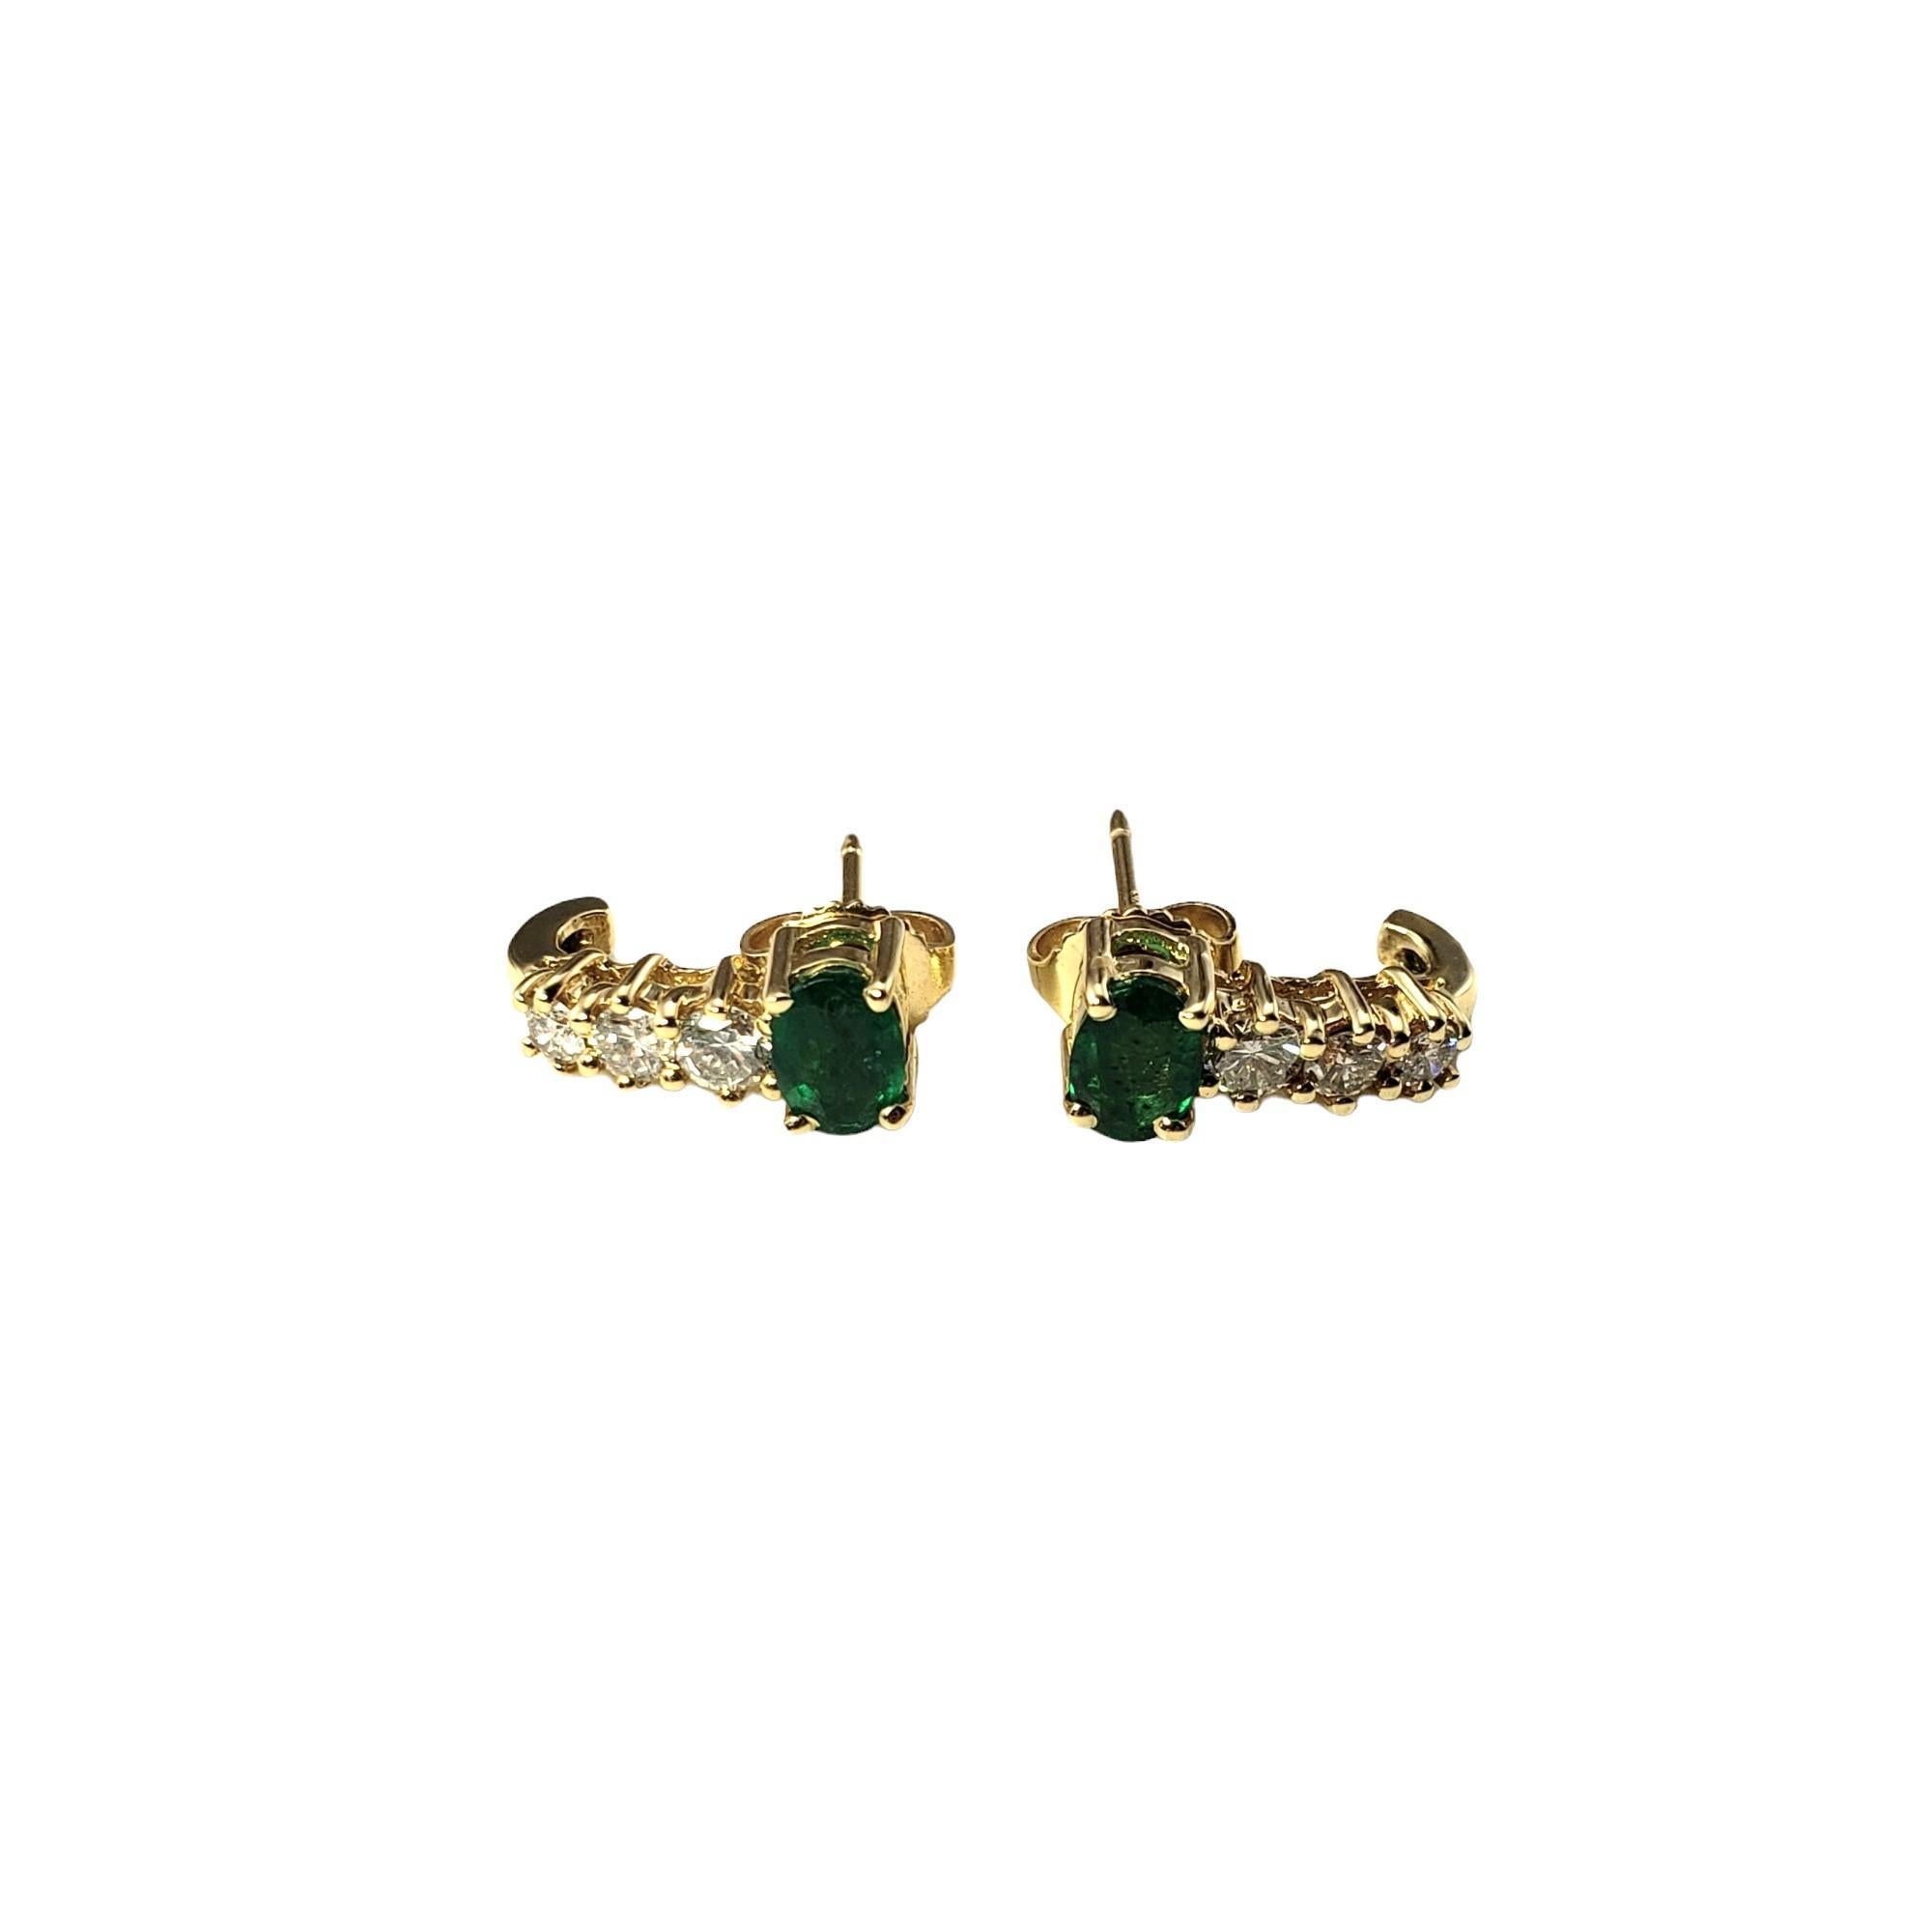 Vintage 14K Gelbgold Smaragd und Diamant-Ohrringe-

Diese eleganten Ohrringe sind mit je einem ovalen natürlichen Smaragd (6 mm x 4 mm) und drei runden Diamanten im Brillantschliff in klassischem 14-karätigem Gelbgold gefasst. 